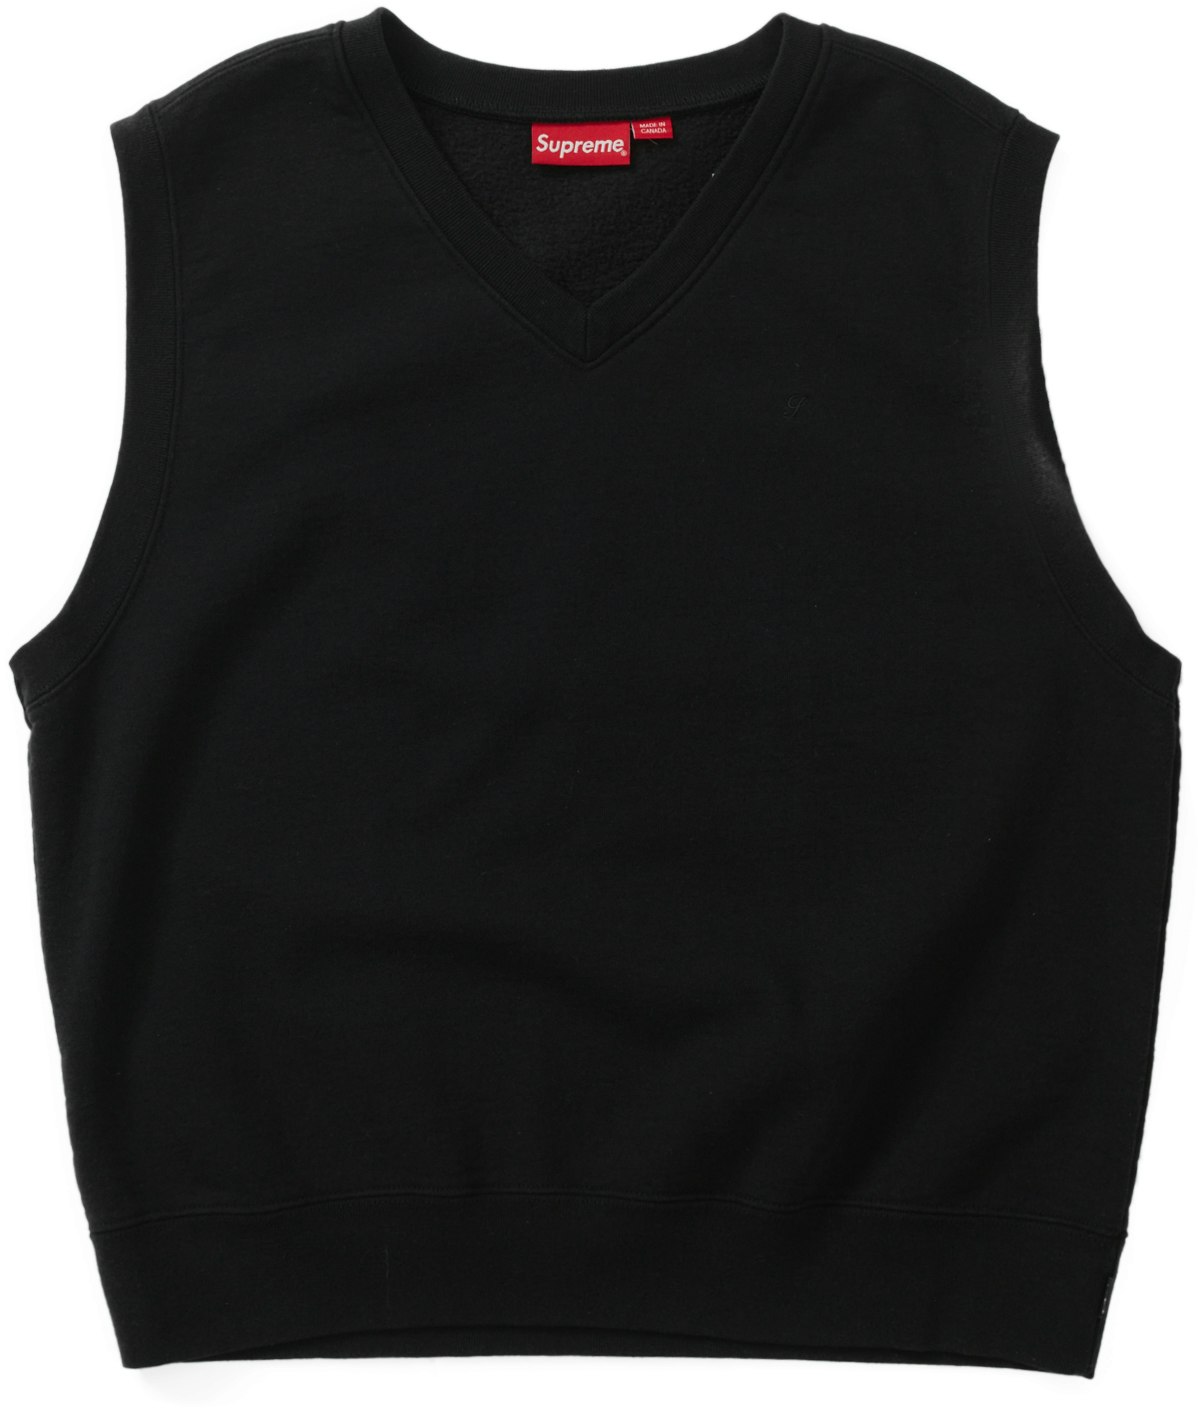 Supreme Sweatshirt Vest Black - Novelship